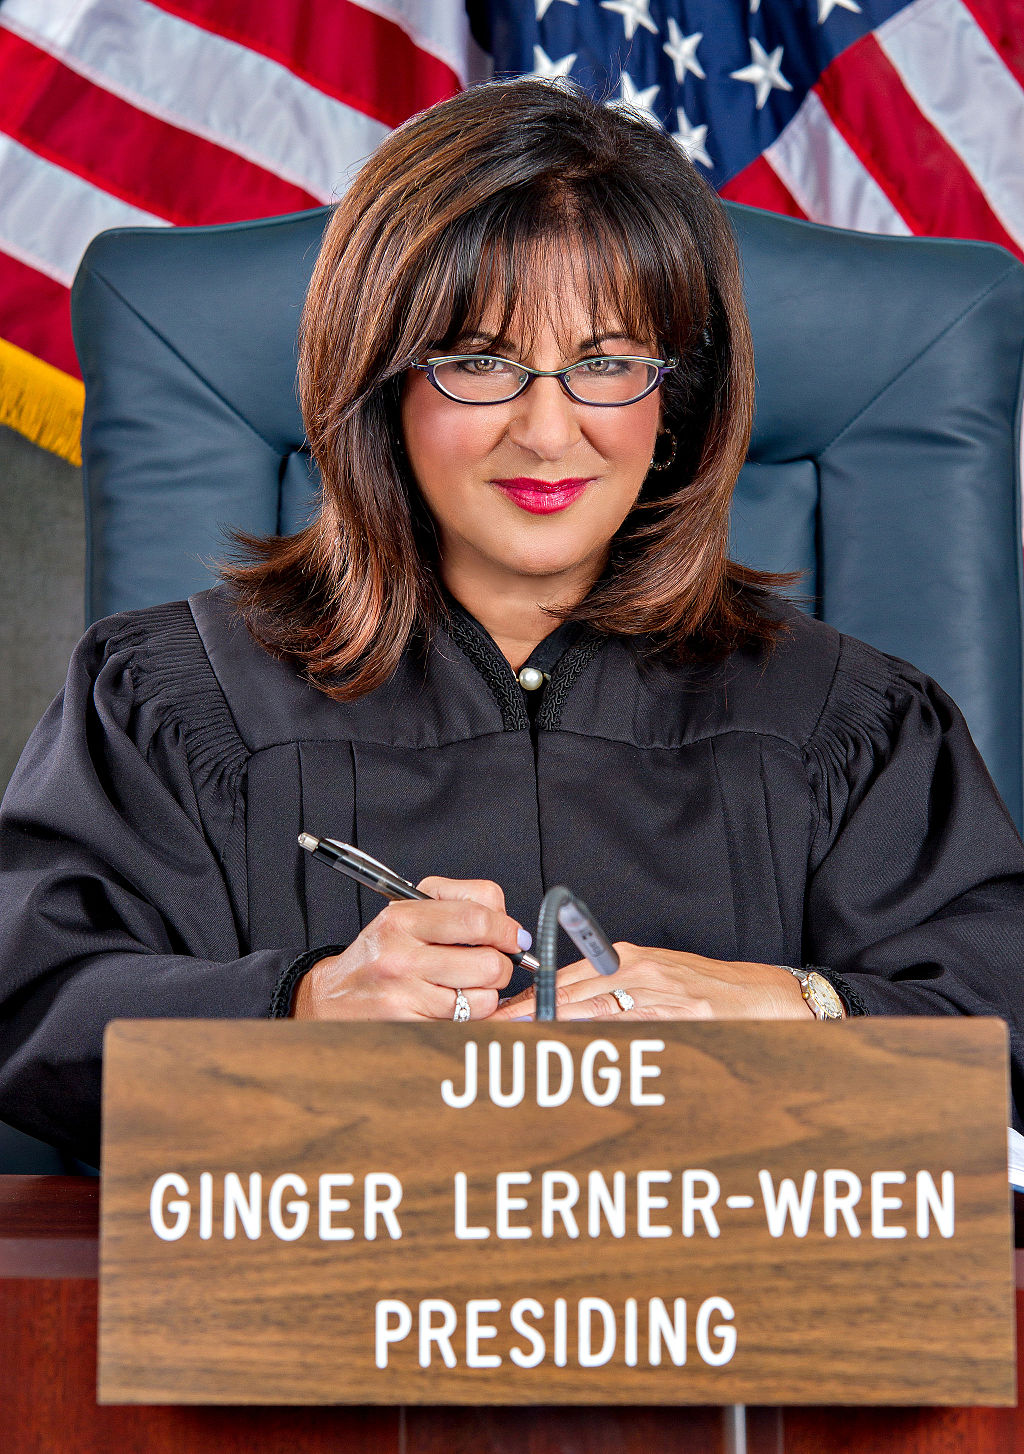 Judge Ginger Lerner-Wren